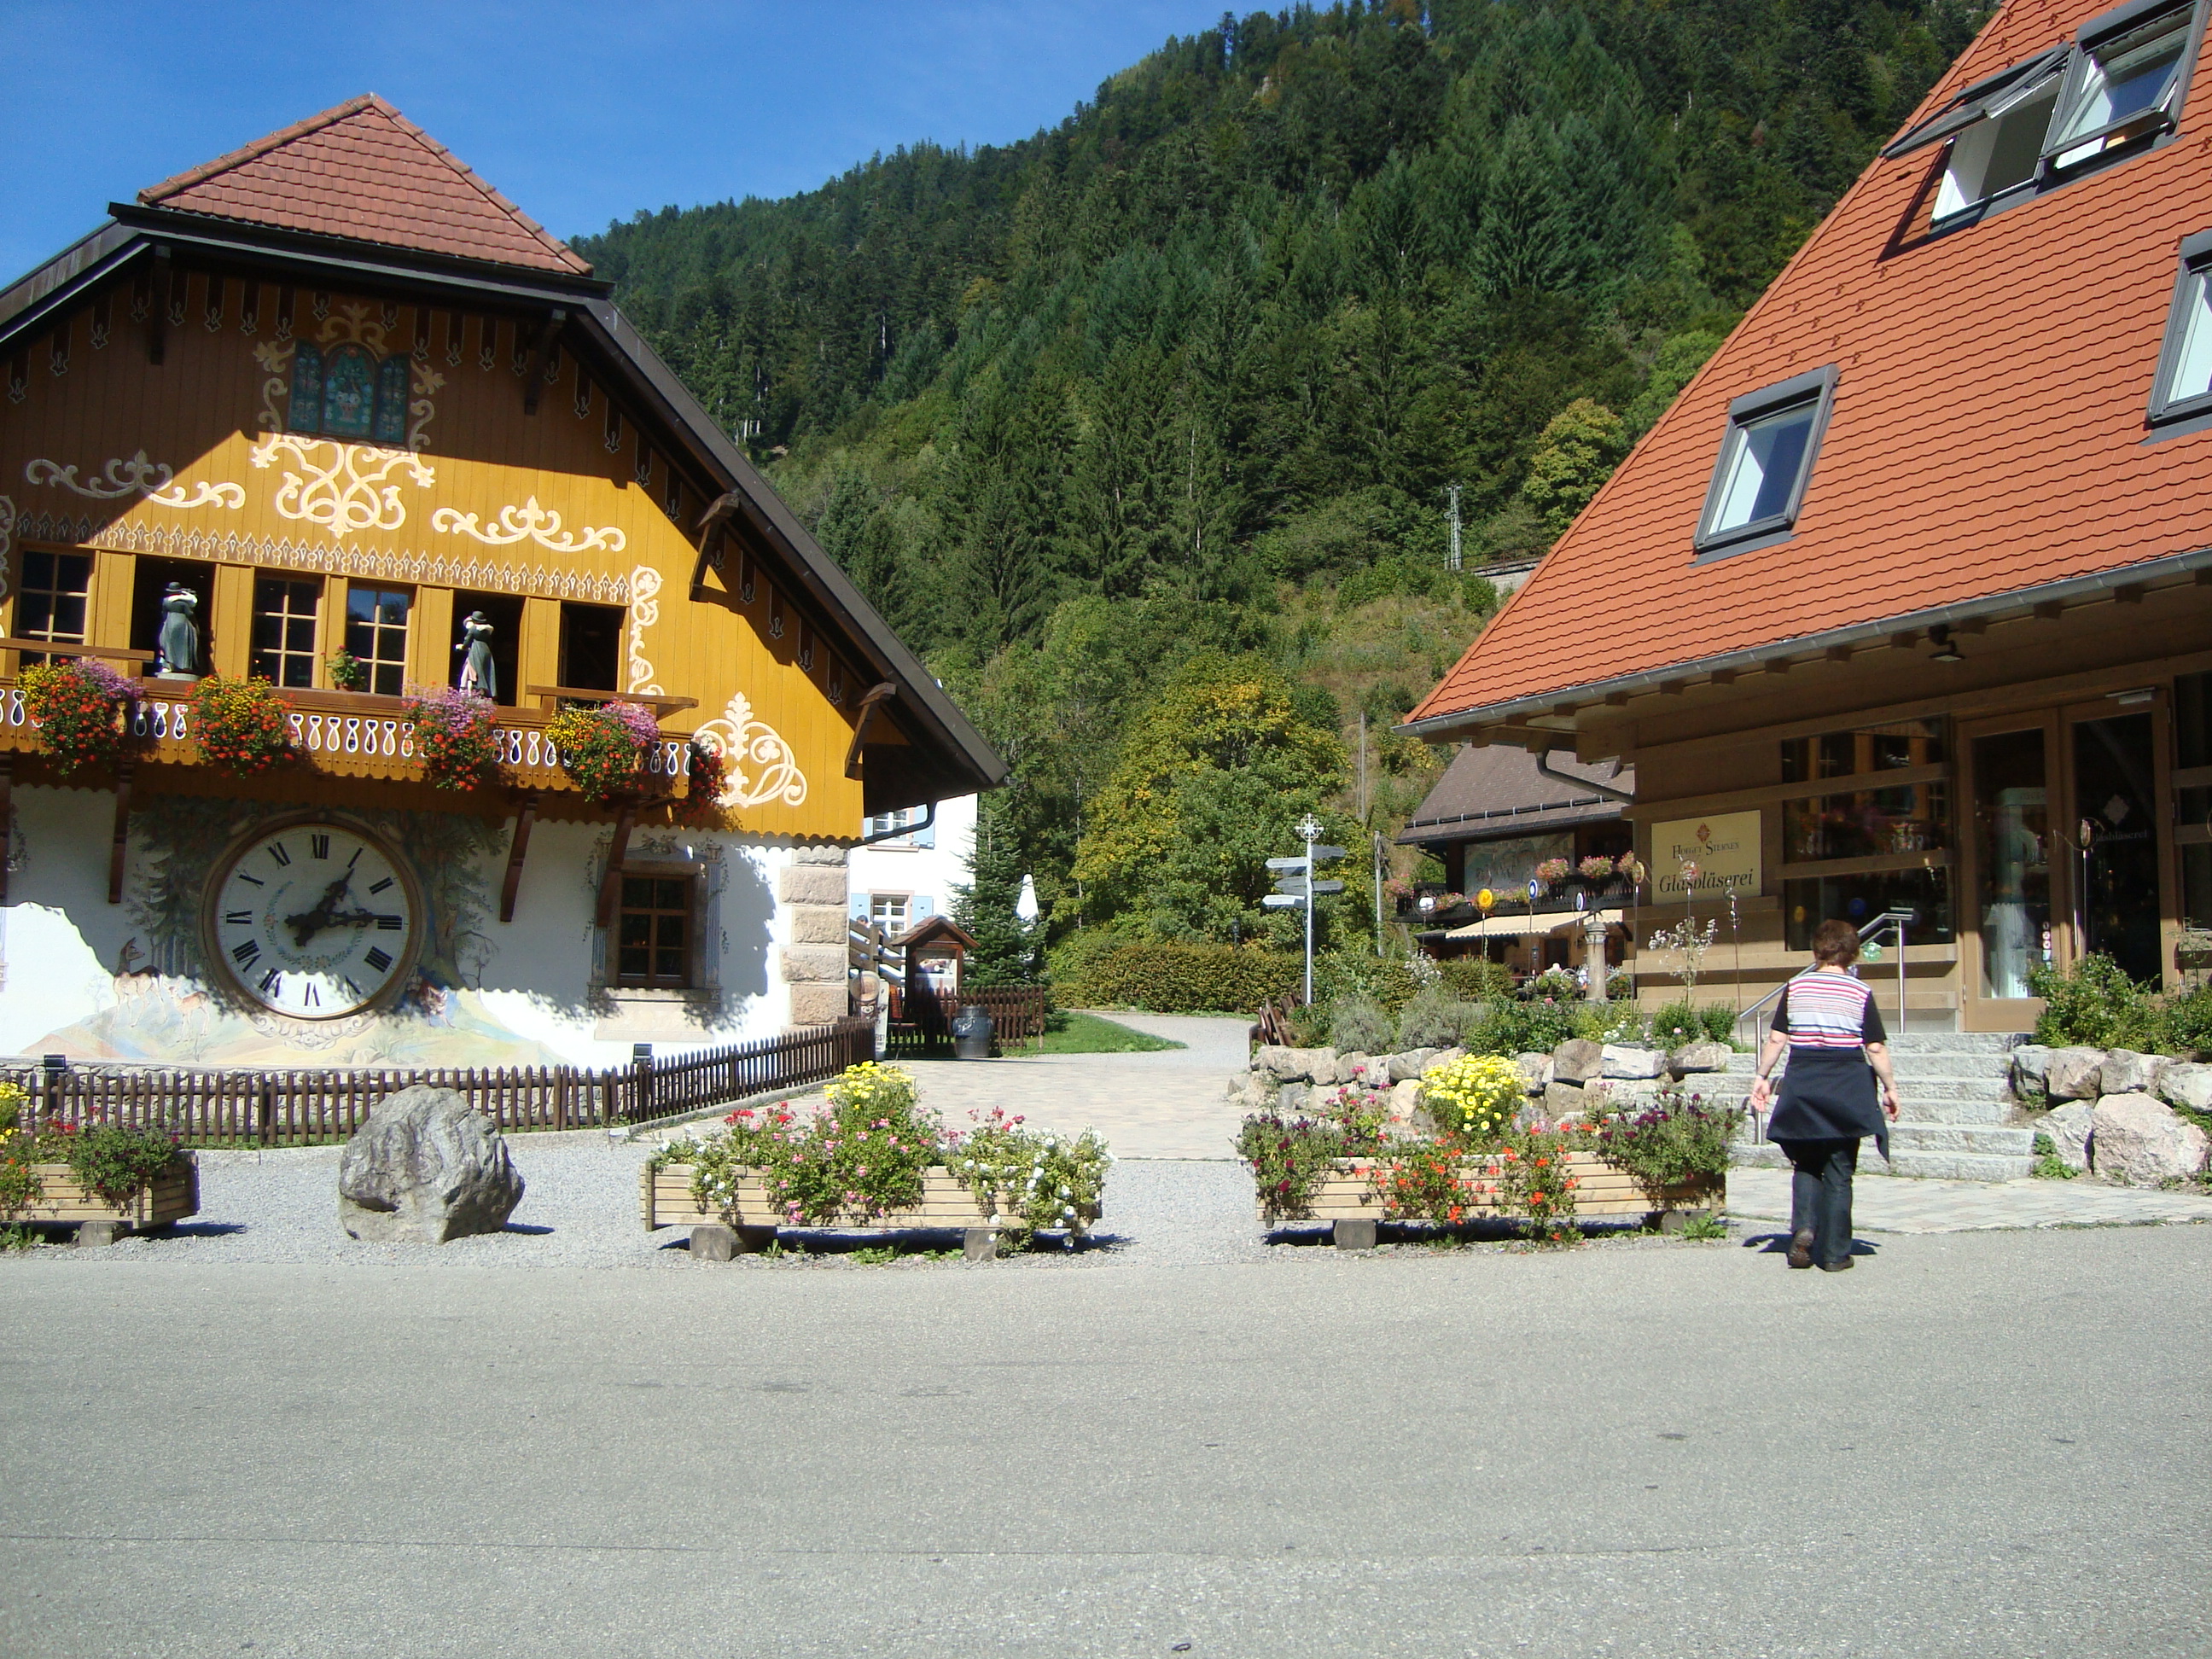 Rechts Hotel mit Restaurant und links ein Gästehaus